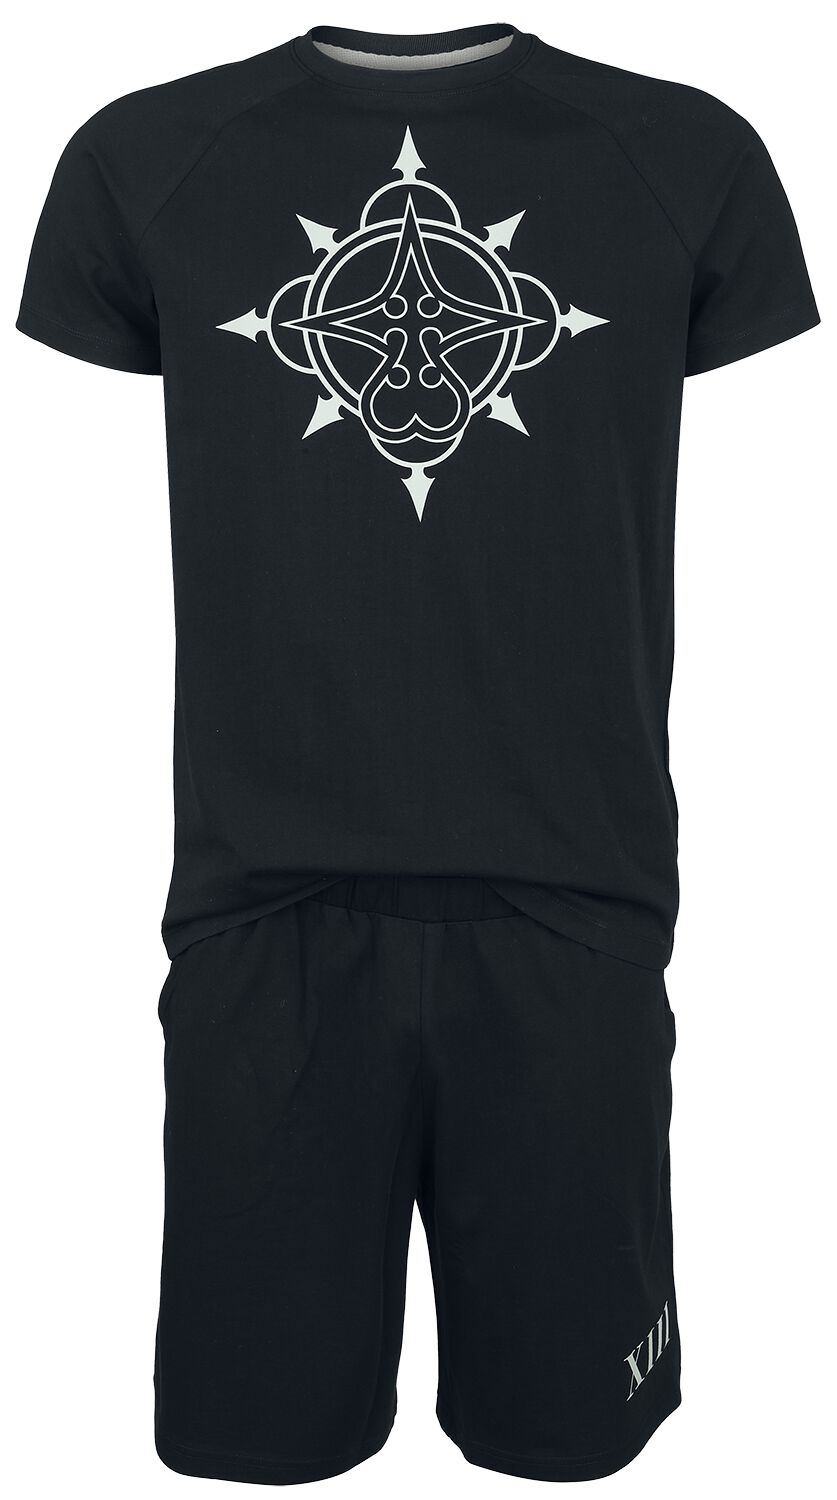 Kingdom Hearts Organisation XIII Schlafanzug schwarz in M